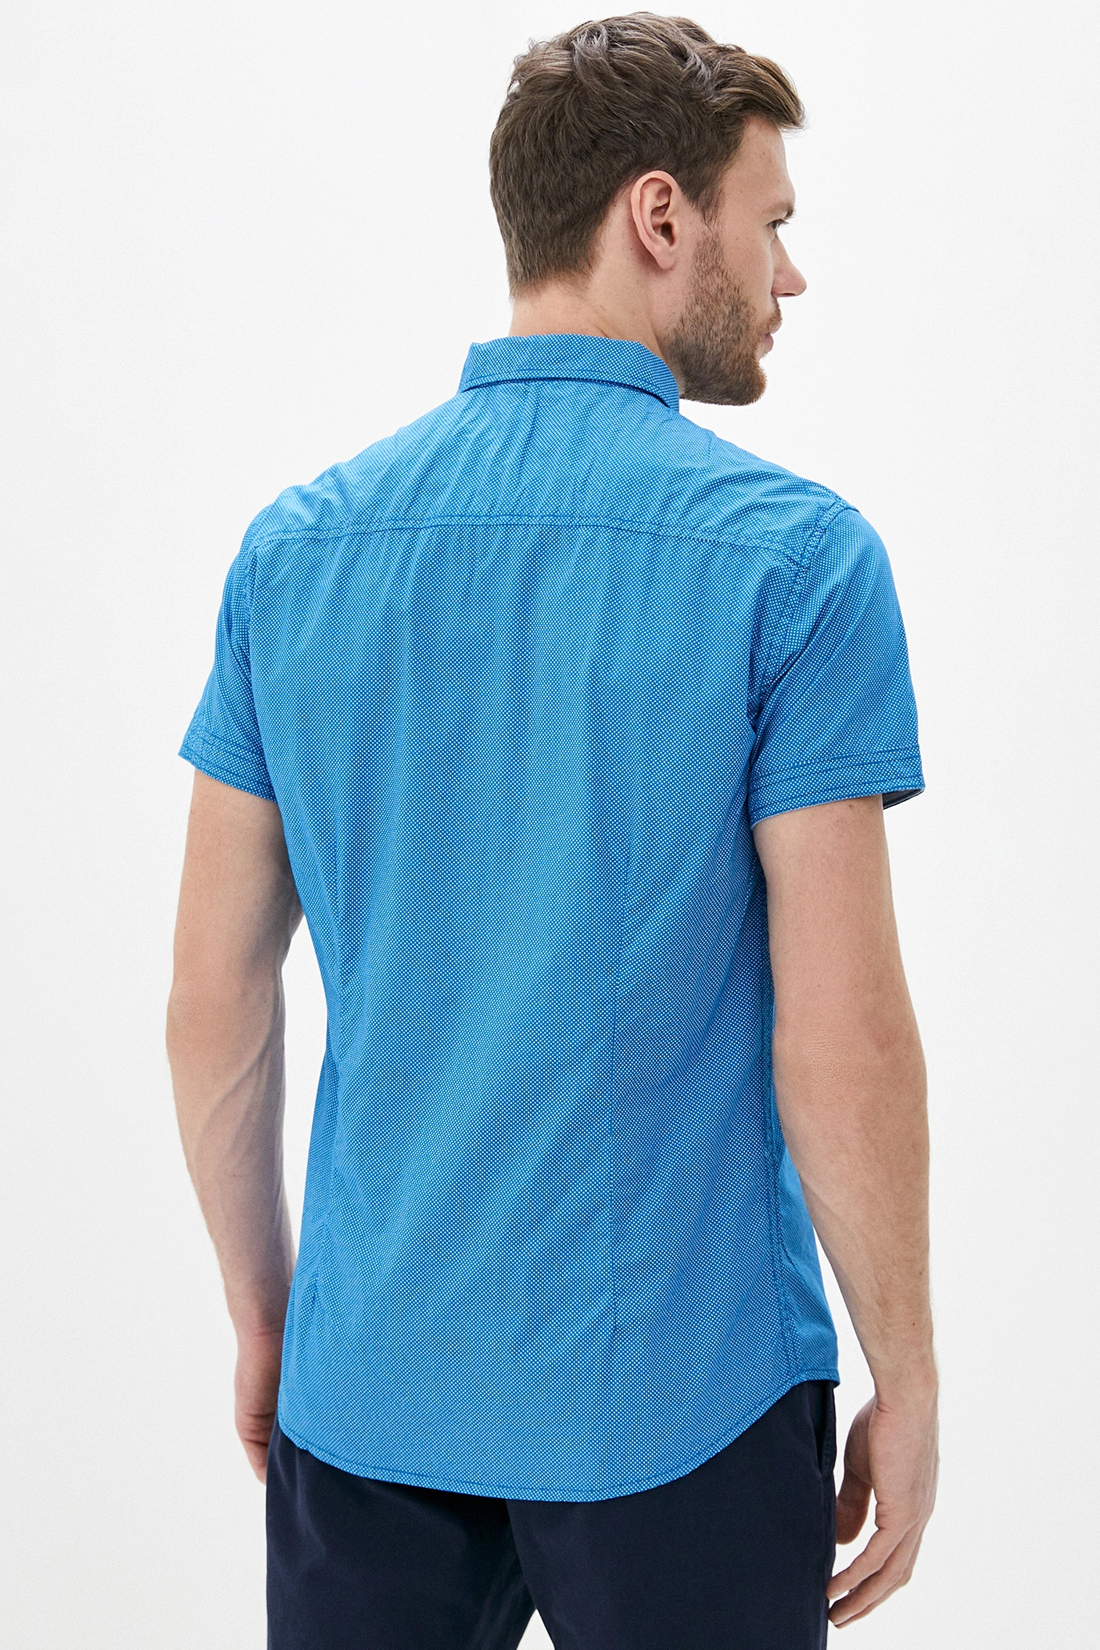 Рубашка в точку с коротким рукавом (арт. baon B680019), размер XL, цвет синий Рубашка в точку с коротким рукавом (арт. baon B680019) - фото 2